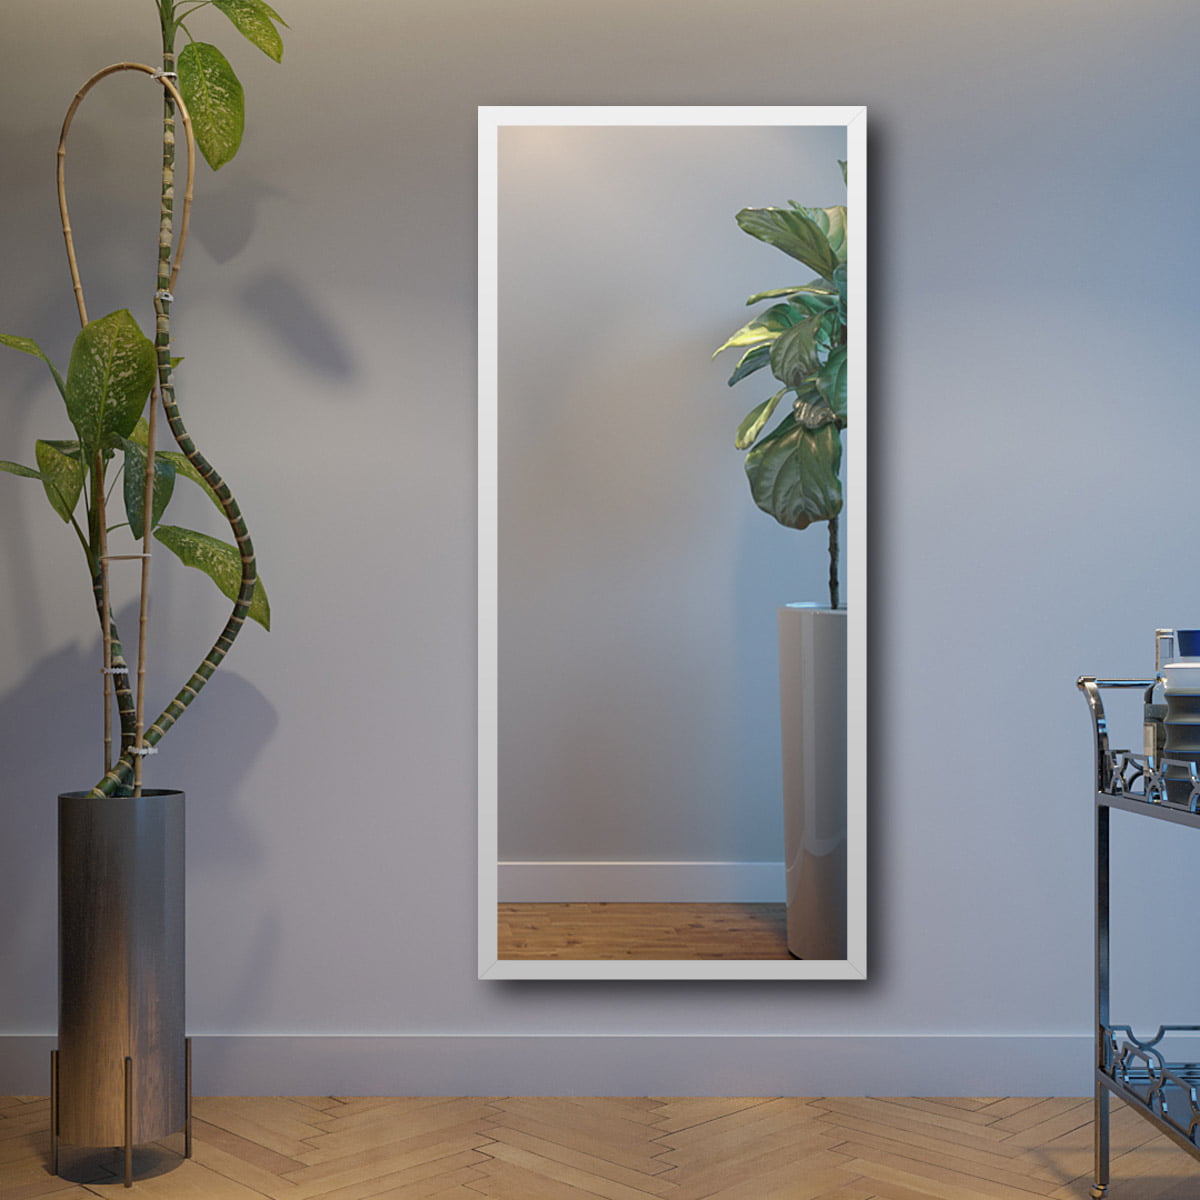 Espelho Moldura Lisa 100x70cm